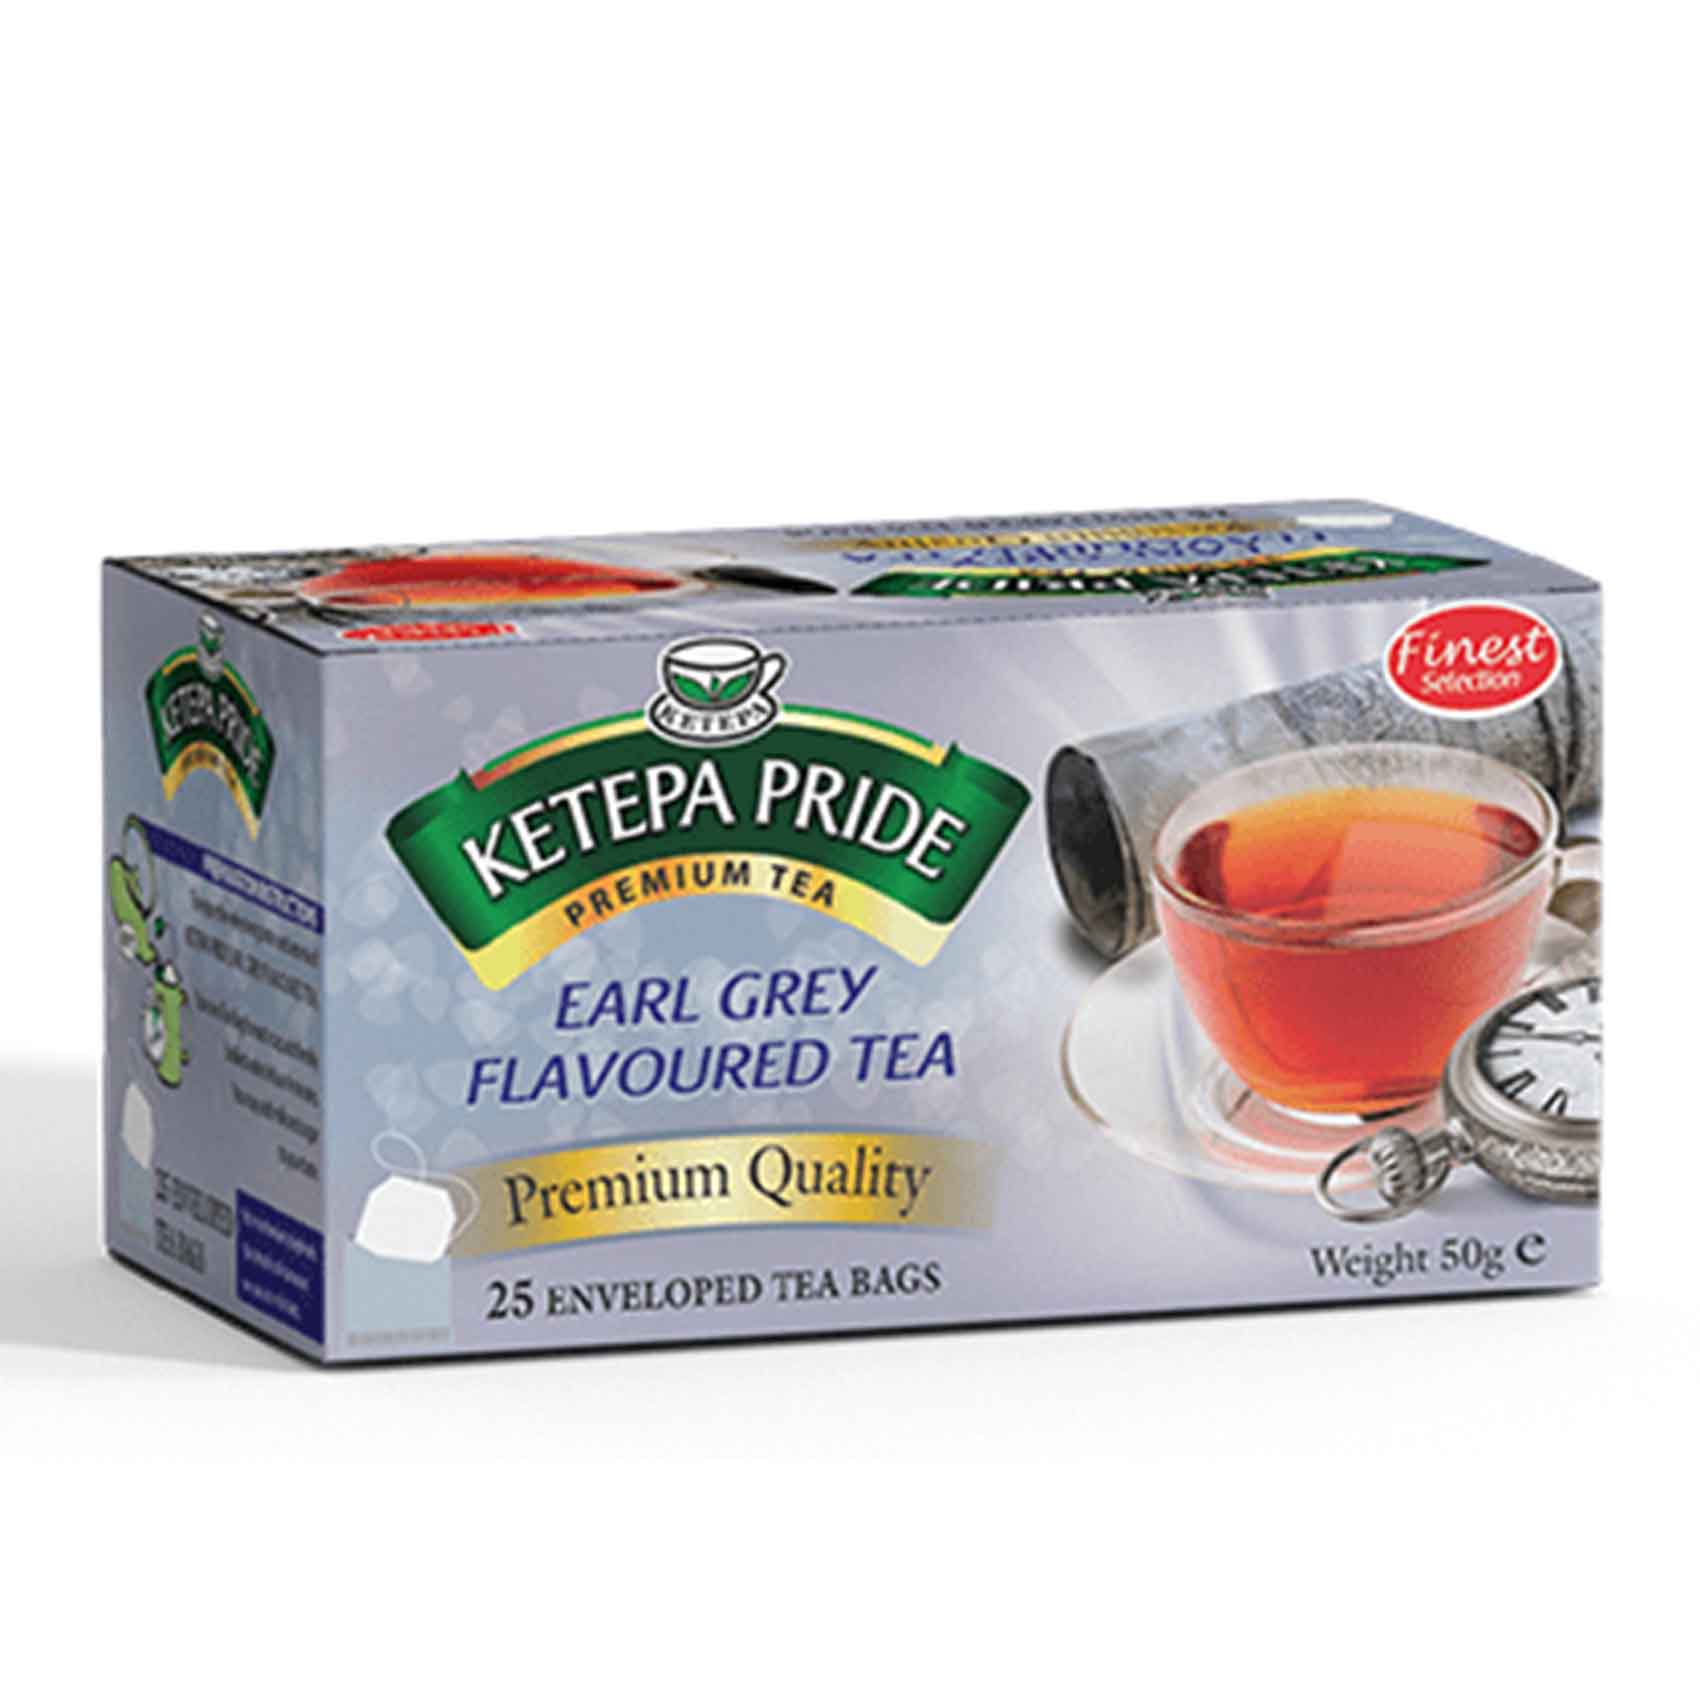 Ketepa Pride Earl Grey Flavour Tea Bags 50g